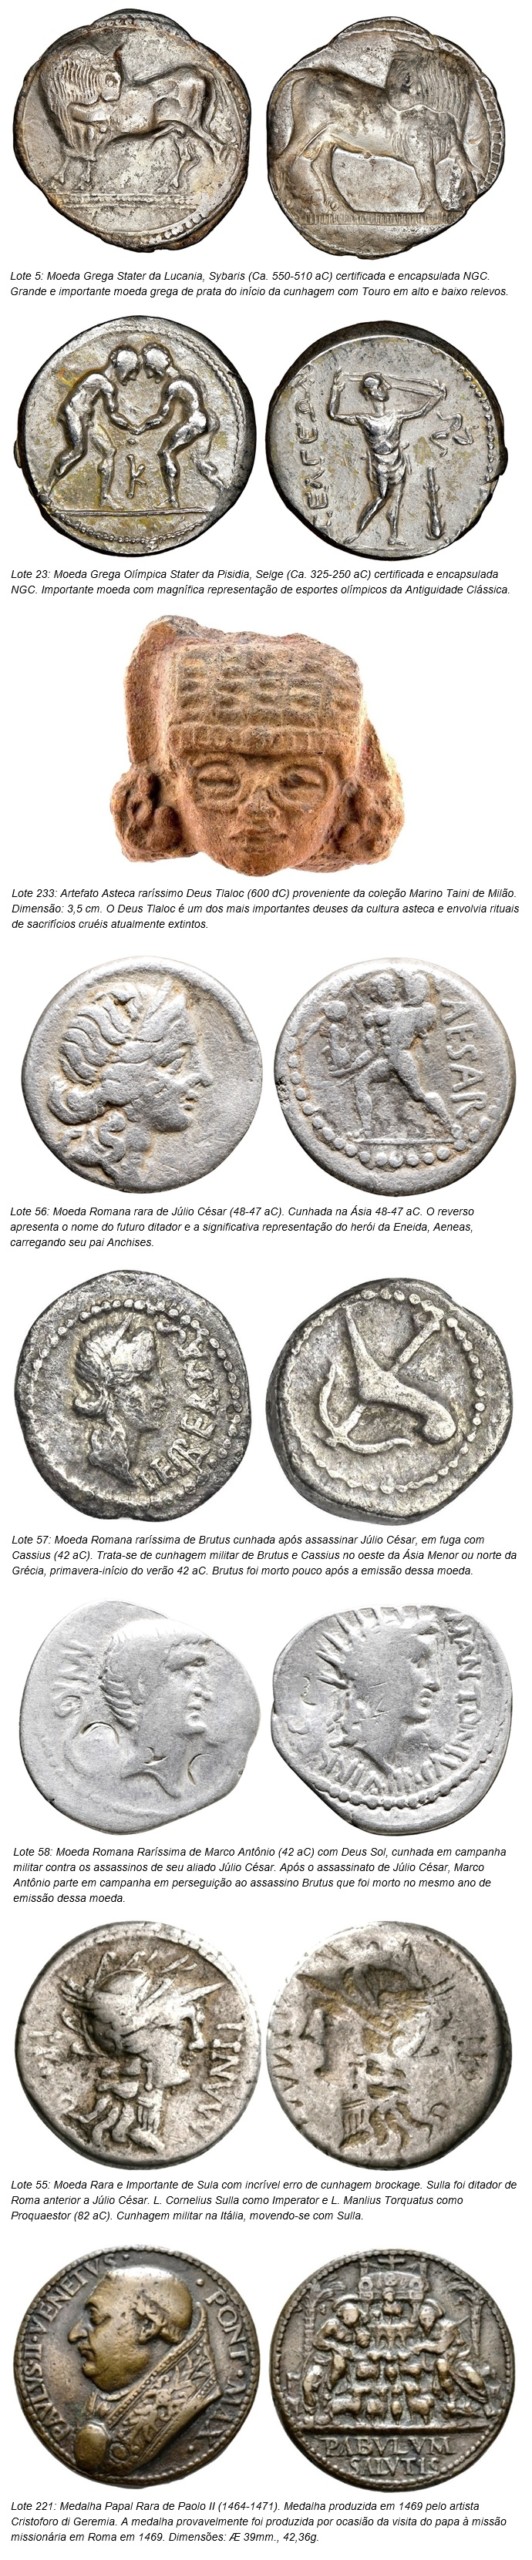 フラビアカルドソソアレスオークション: 5ºConatusCoinsAuctionof Coins and Artifacts of Classical Antiquity (ギリシャ語, ローマ人とビザンチン人), ハイライト. ディスクロージャー.